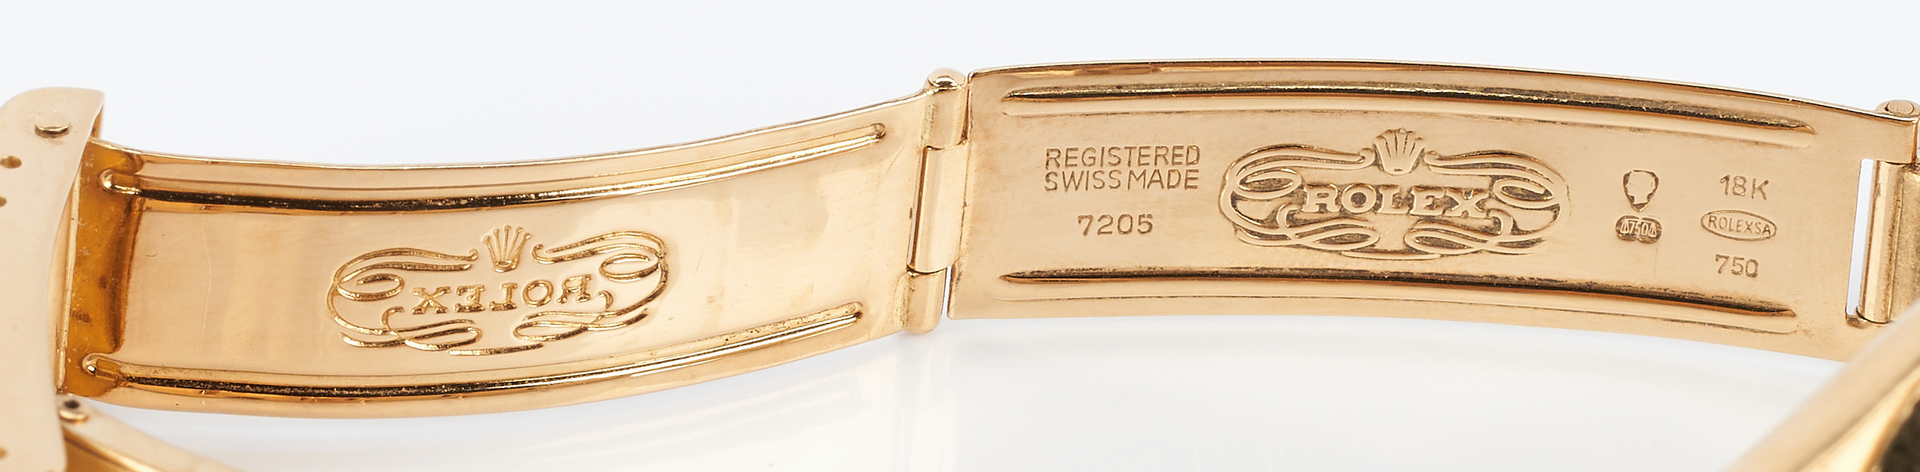 Lot 42: Rolex 18K Date Model Wrist Watch